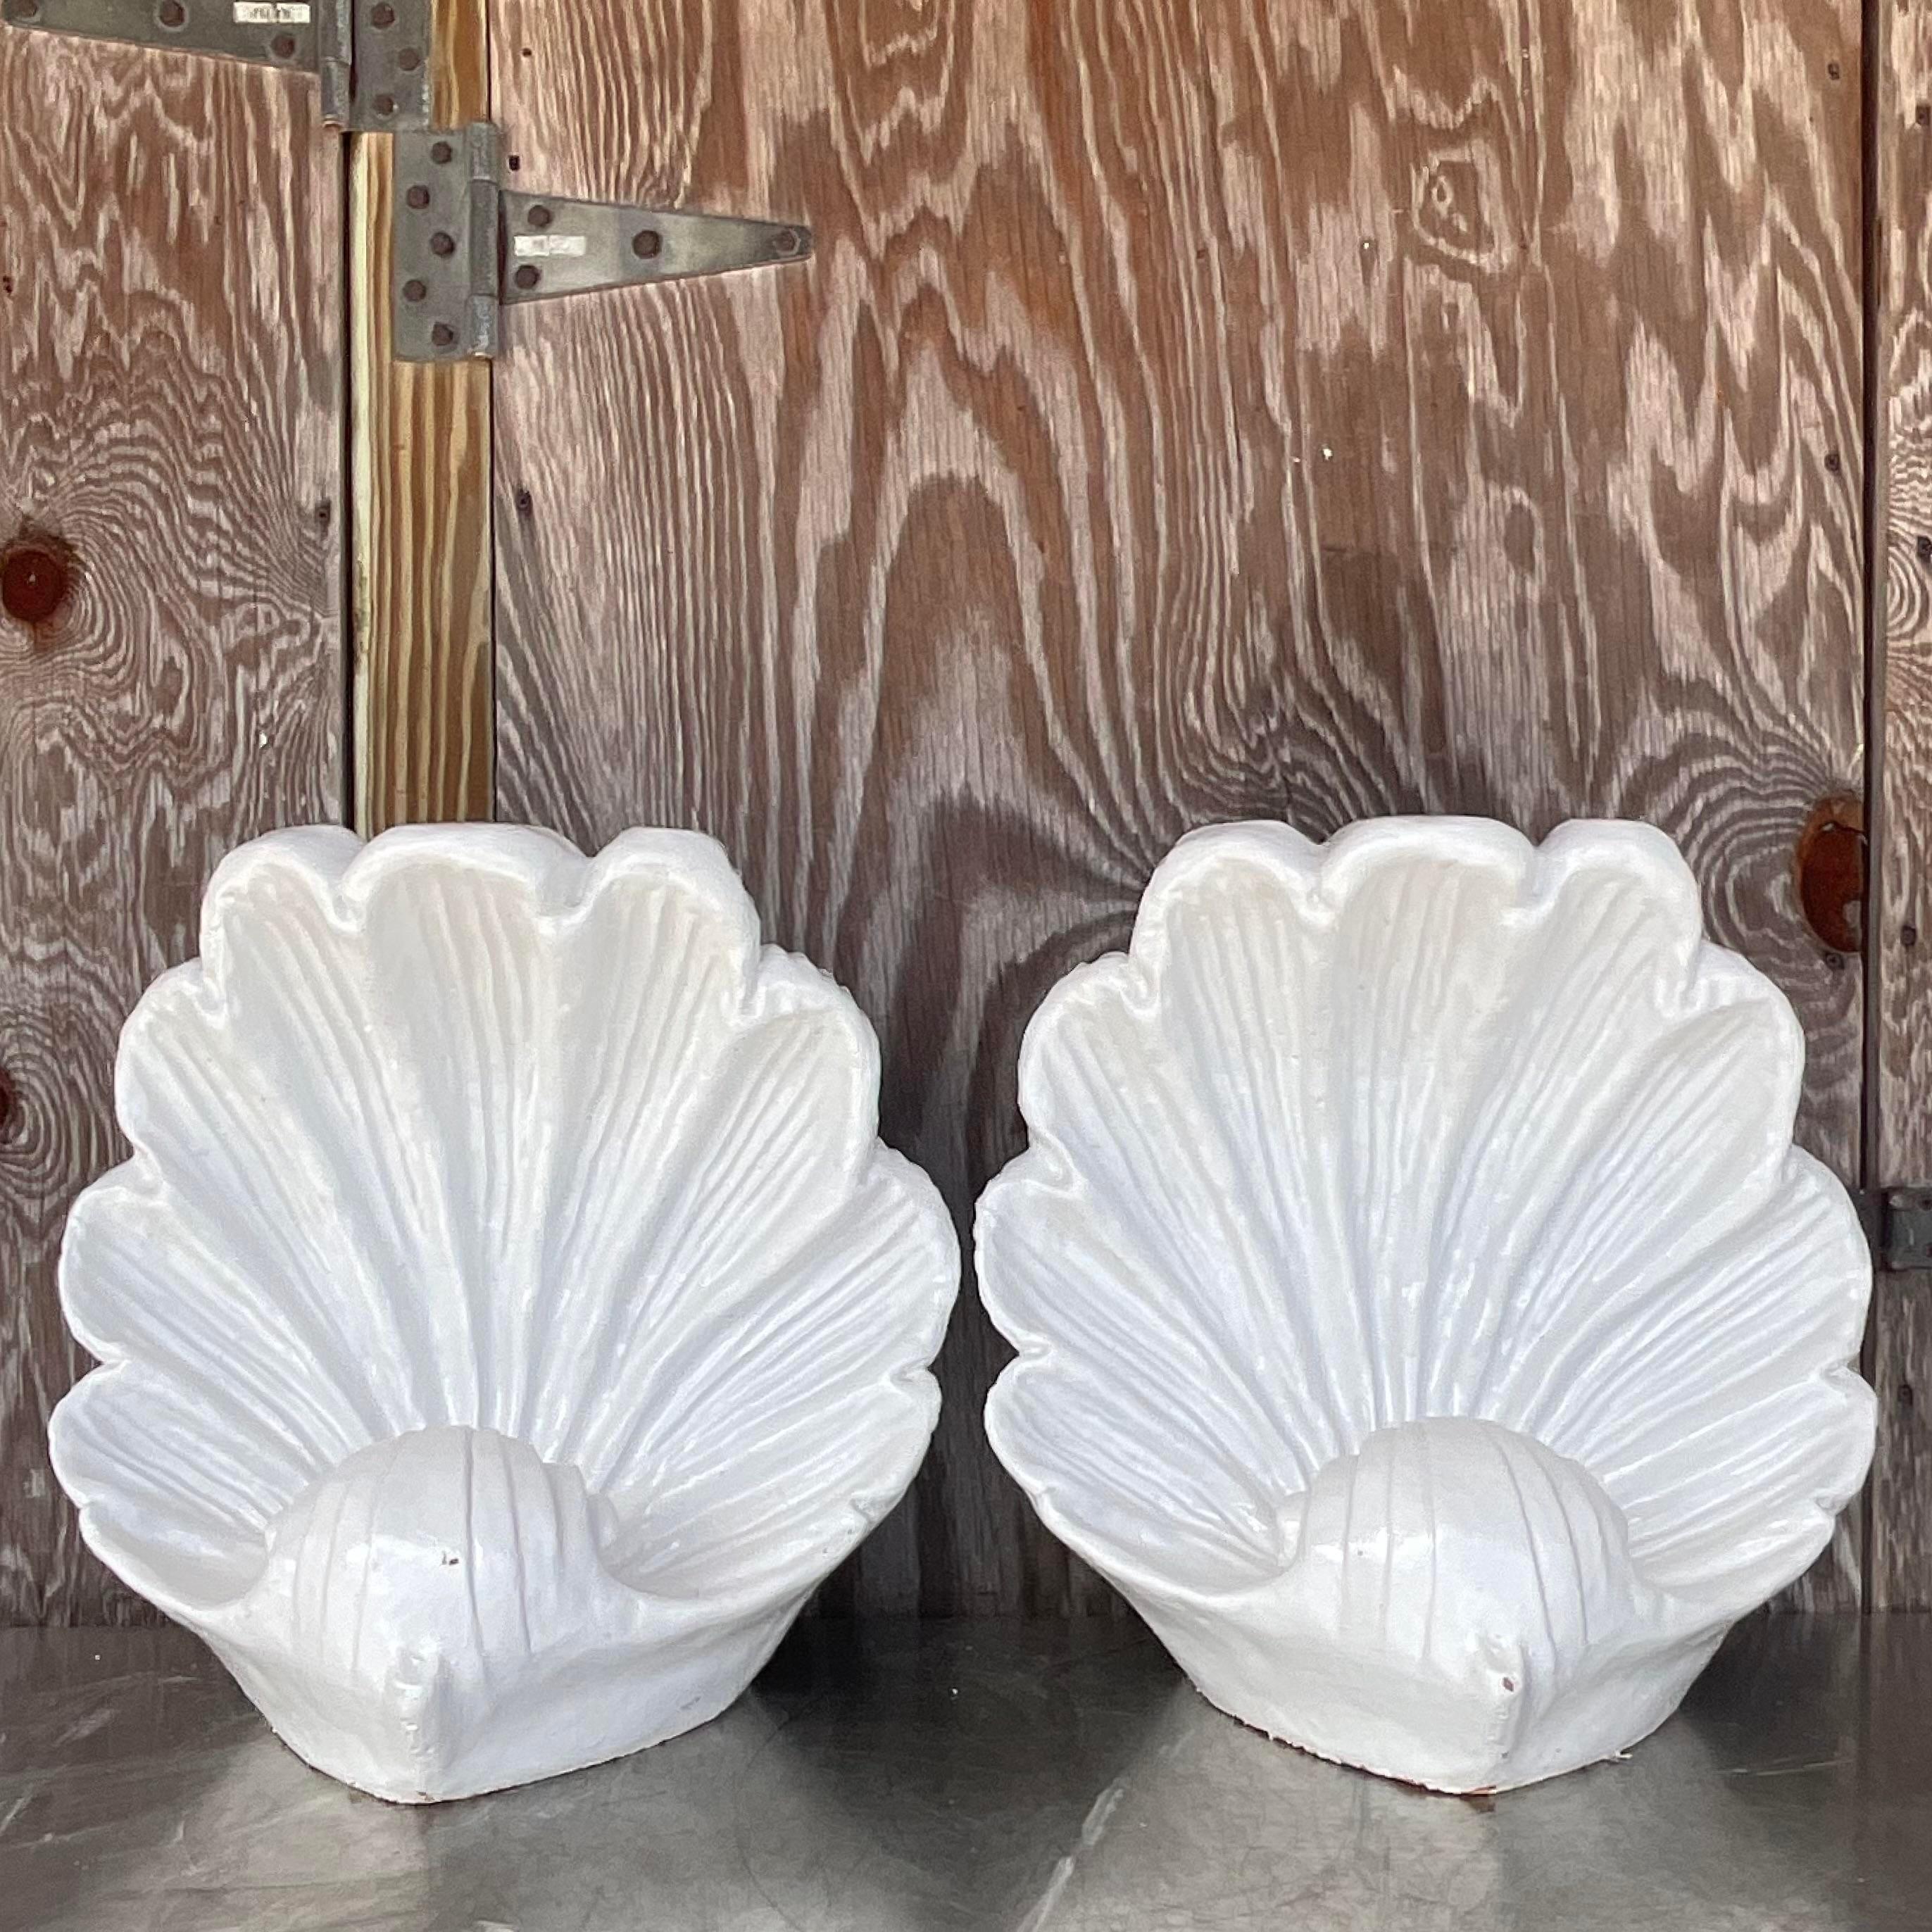 Ein fabelhaftes Paar großer Vintage-Muschelschalen. Ein schickes Paar Keramikschalen in weiß glasierter Ausführung. Kann als Sockel für einen Couchtisch verwendet werden, aber ich finde, sie sehen auch als dekoratives Element schön aus. Erworben aus